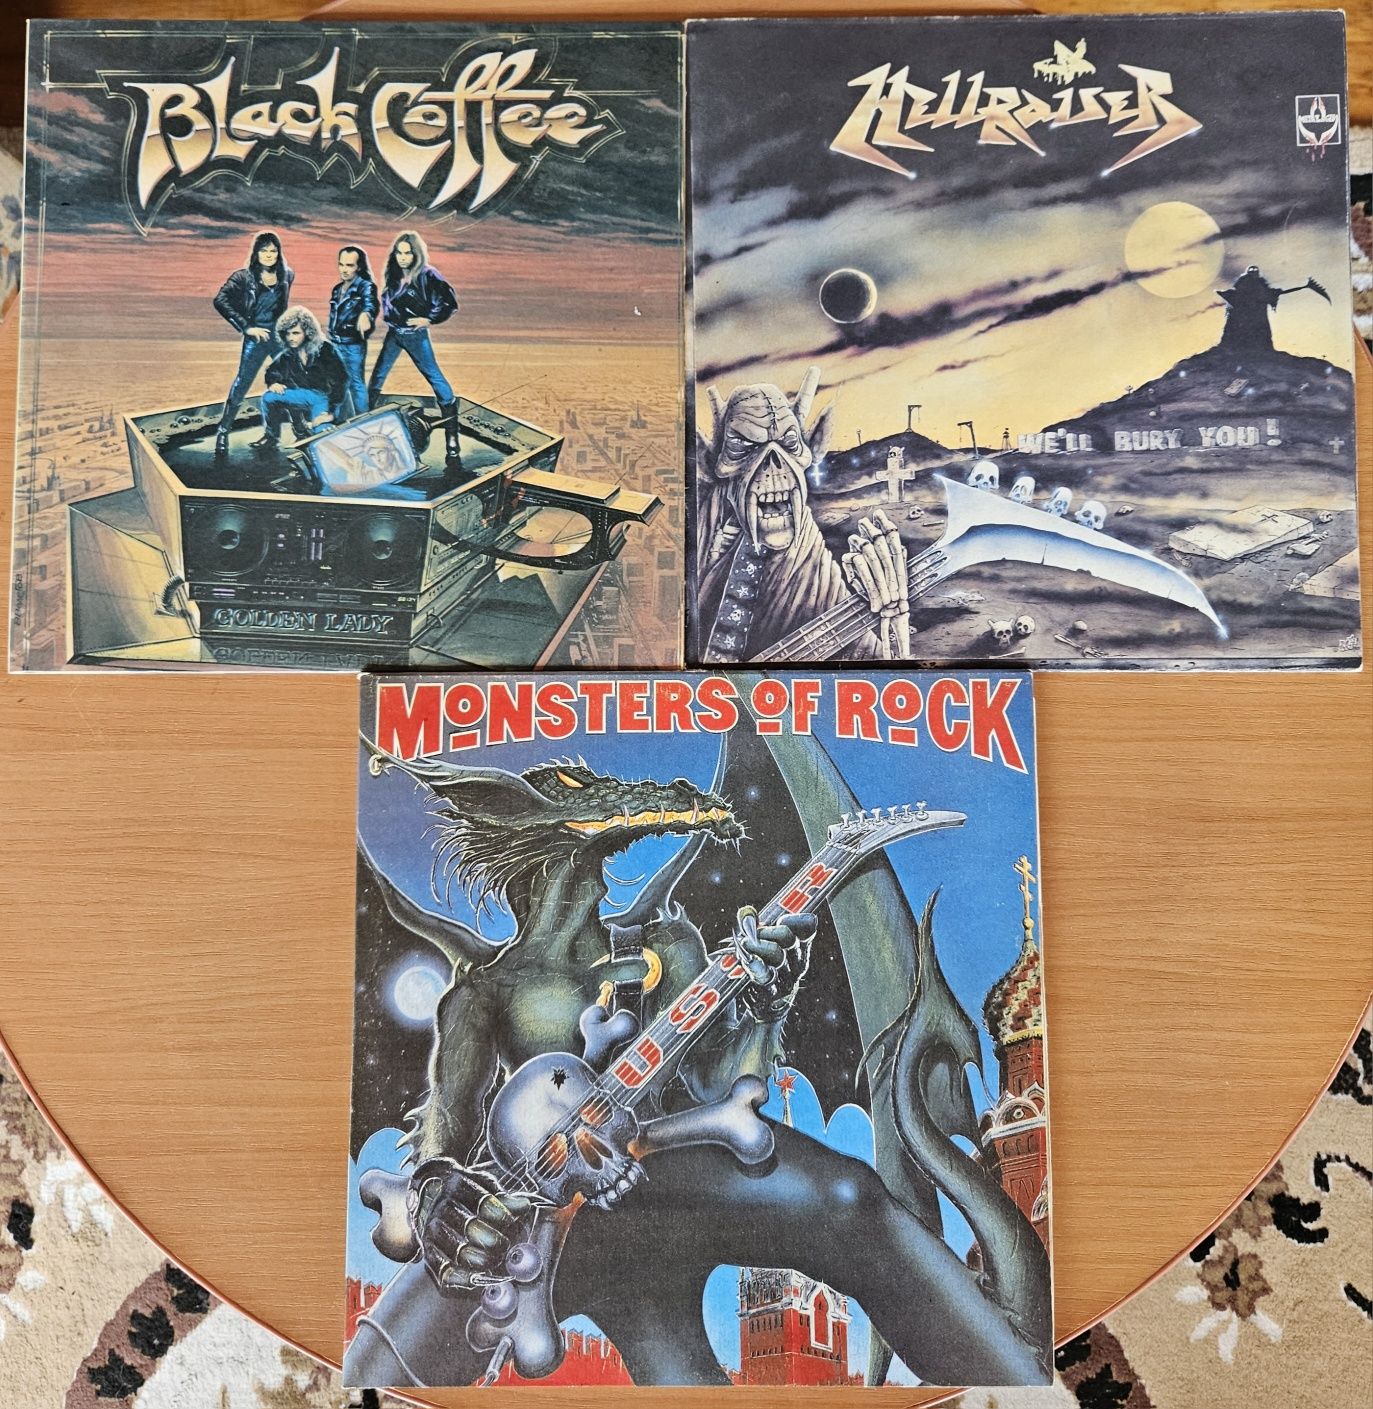 LP Black coffee, Hellraiser, 2LP Monsters of rock